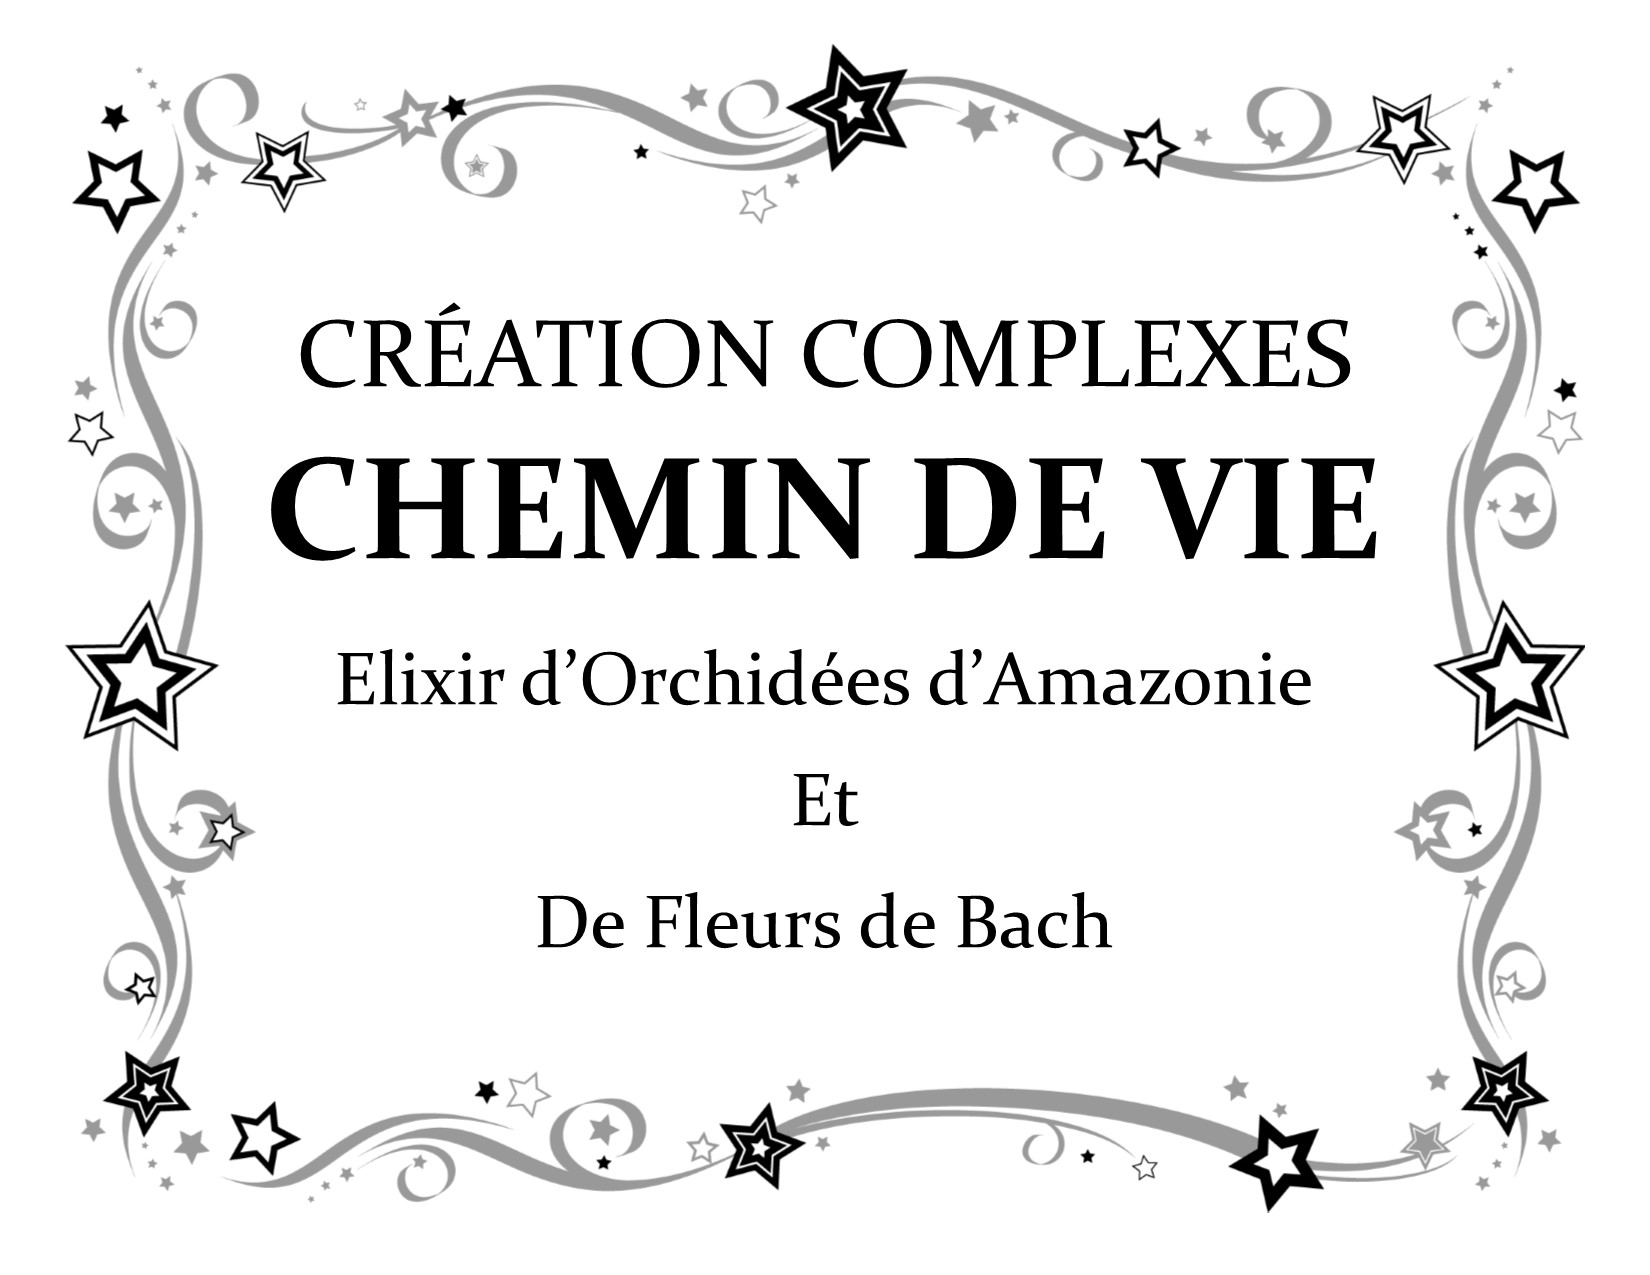 Les Elixirs (fleurs de Bach et élixirs d’orchidées) au secours de votre vie présente et de votre chemin de vie